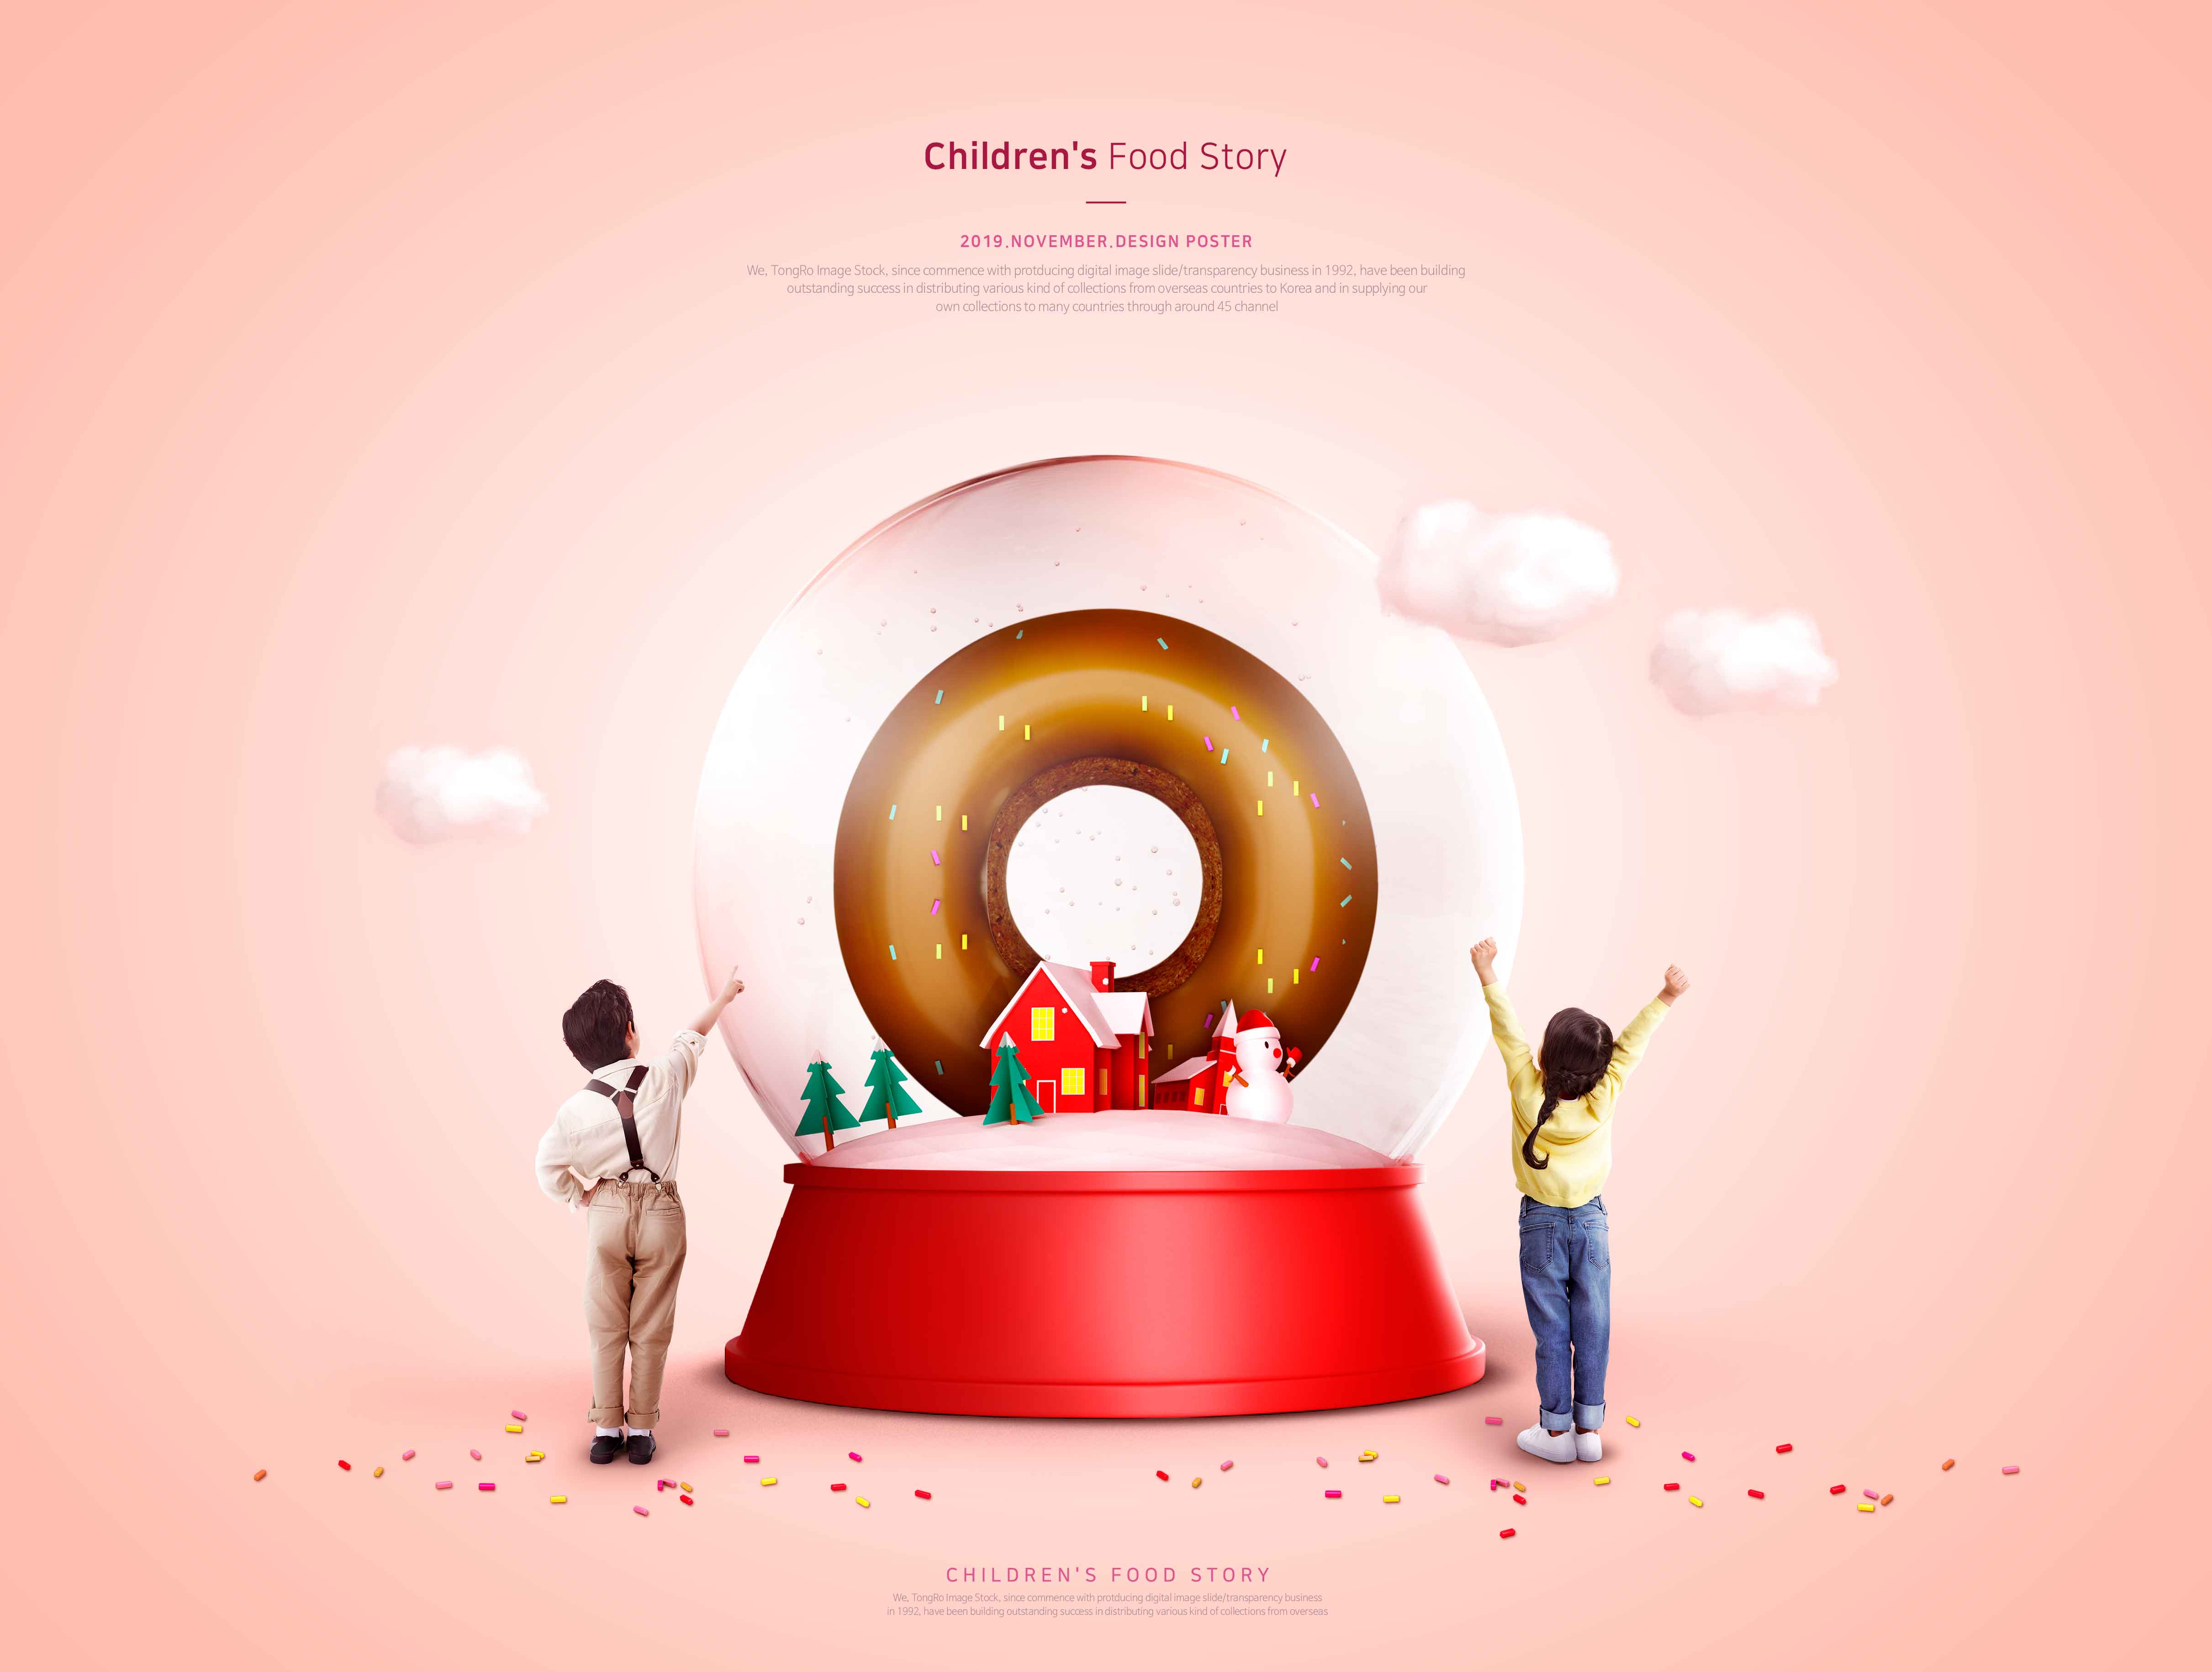 儿童食品故事甜甜圈美食推广海报PSD素材16图库精选模板插图